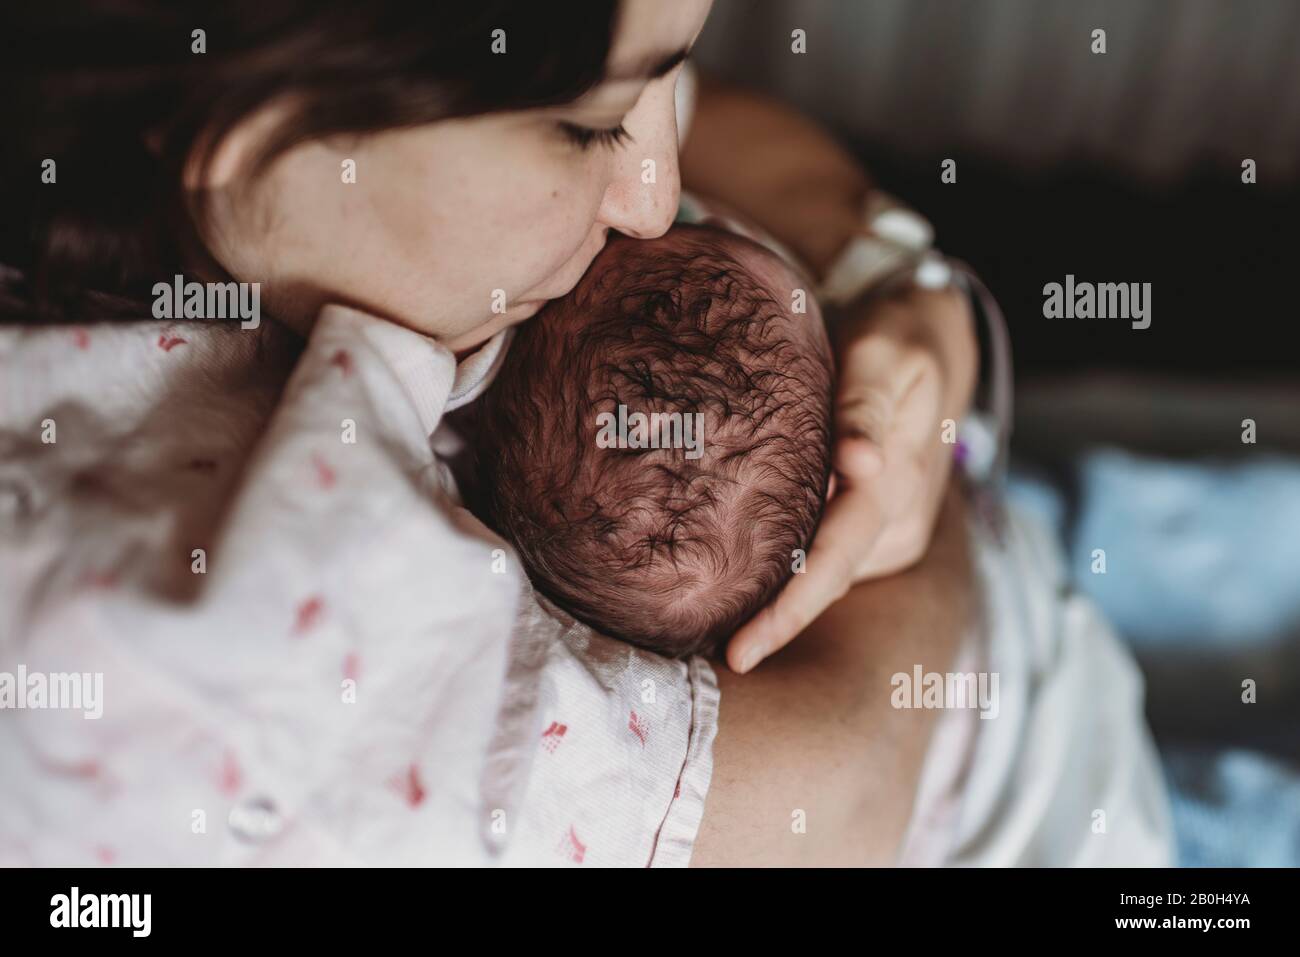 Mittelansicht der Mutter im Krankenhausbett küssen Kopf des neugeborenen Sohnes Stockfoto